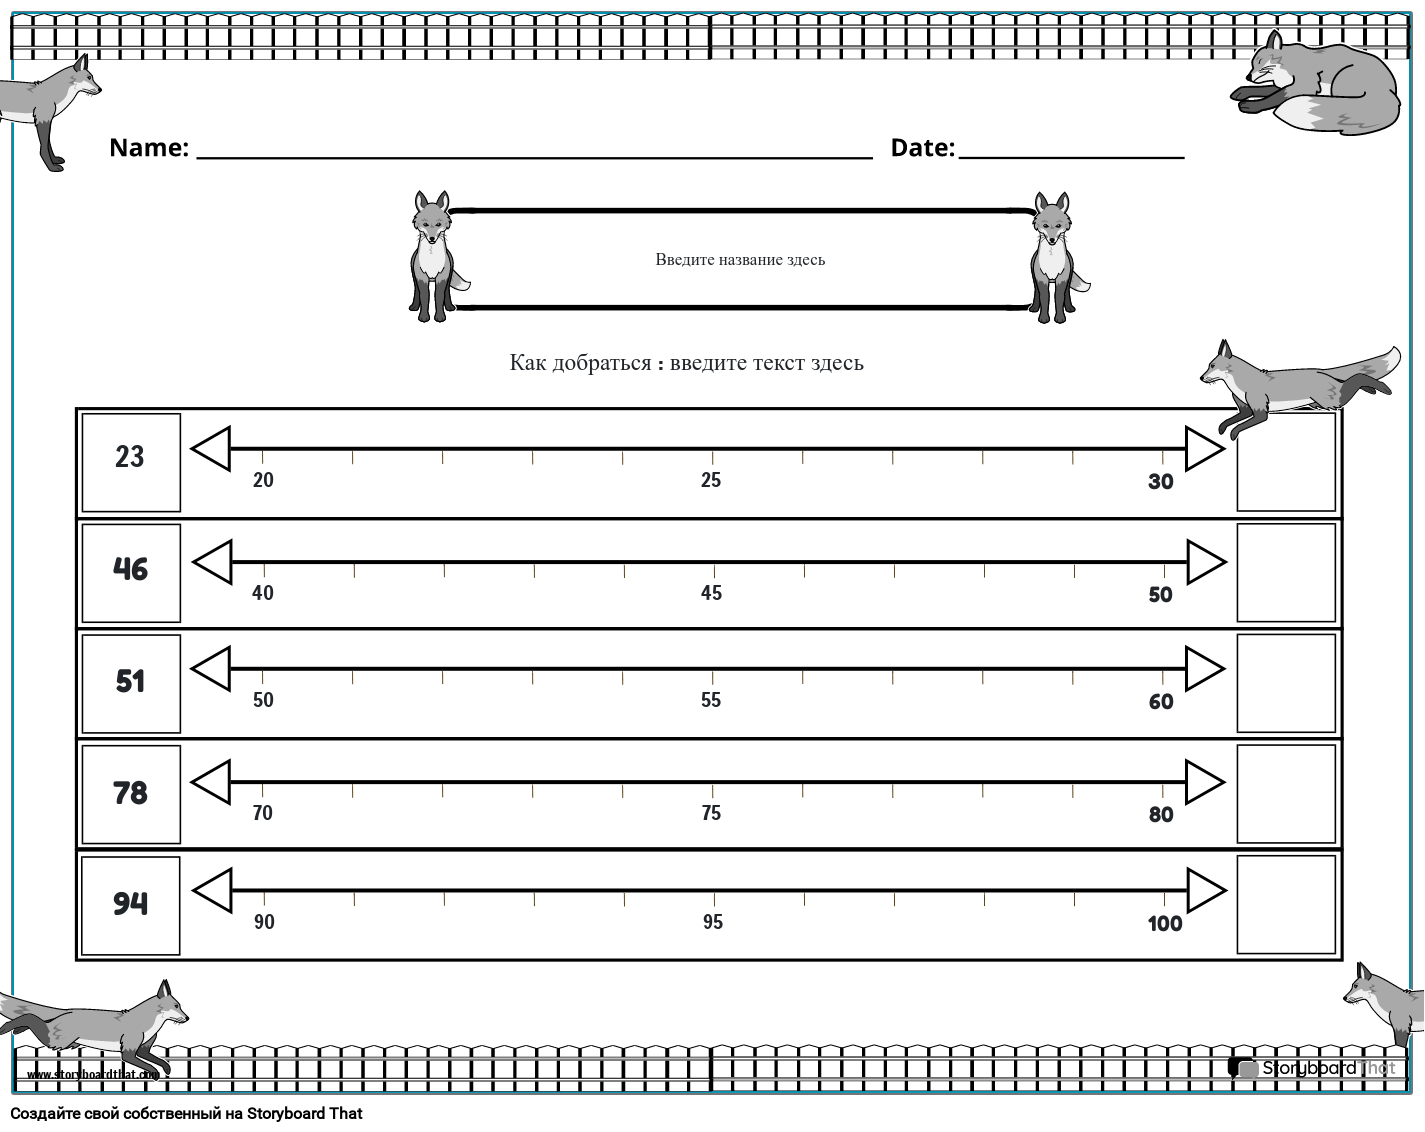 Рабочий лист округления чисел с черно-белым изображением лисы